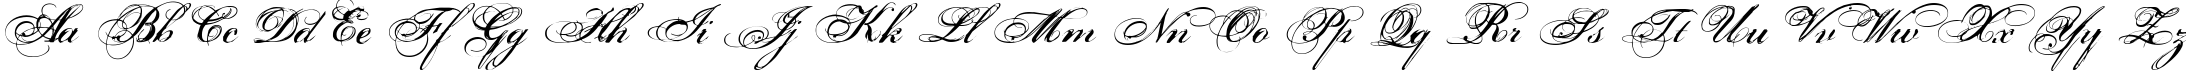 Пример написания английского алфавита шрифтом Porcelain